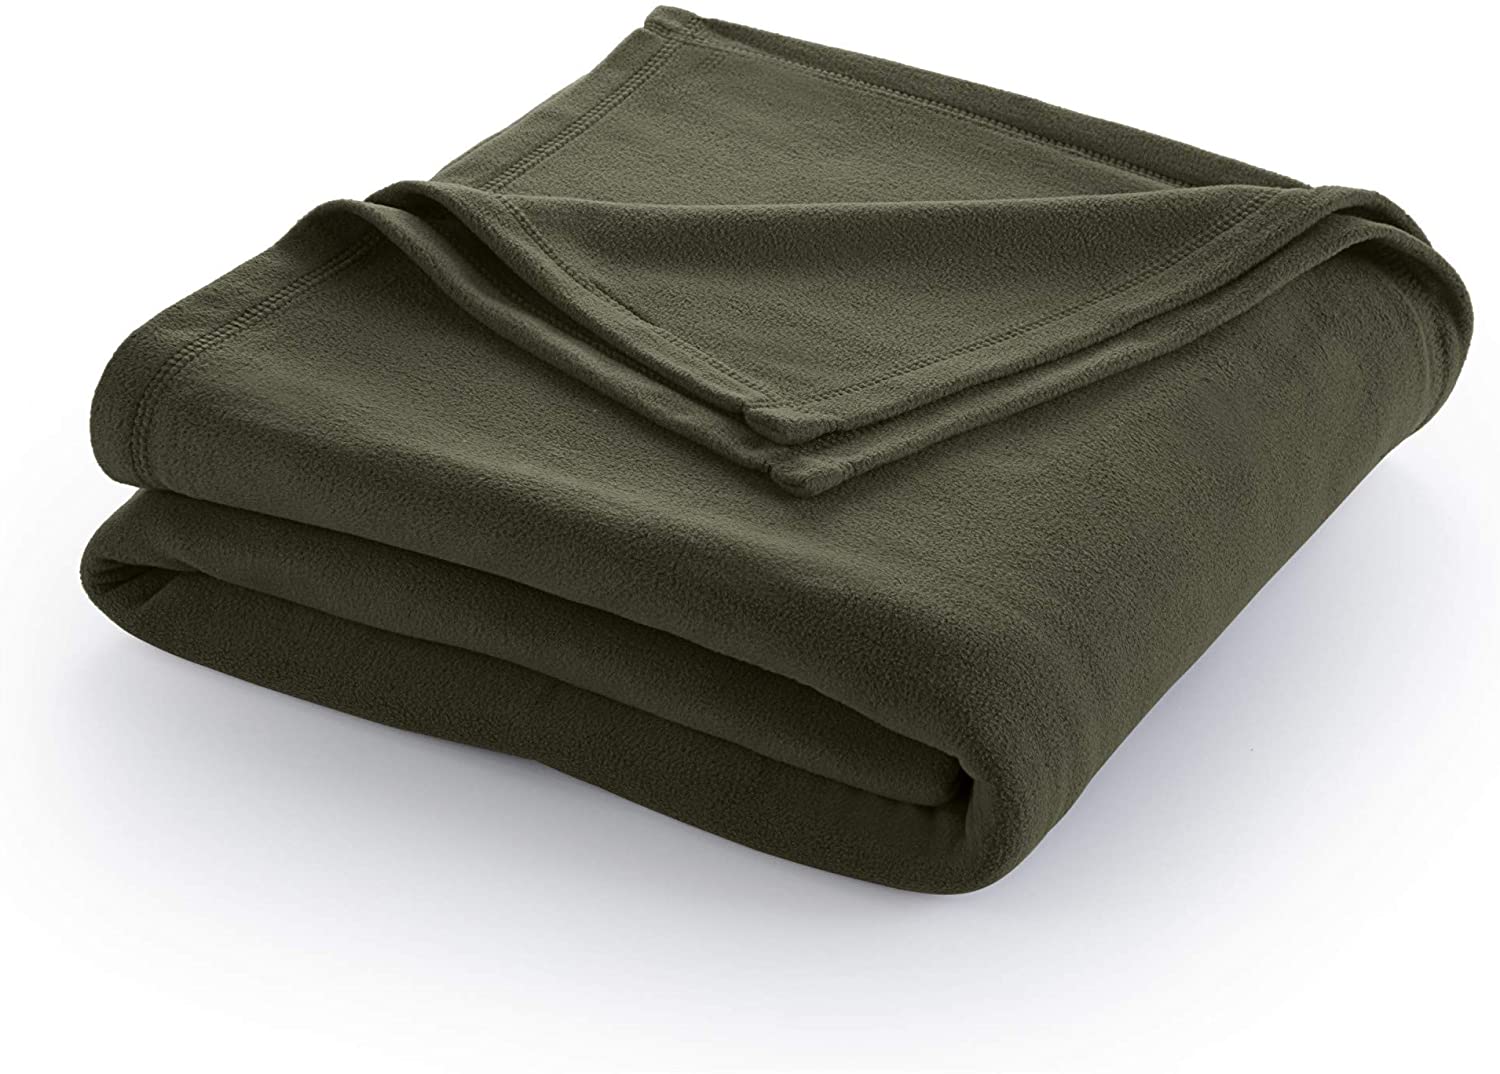 Martex Plush Blanket, Since 1813